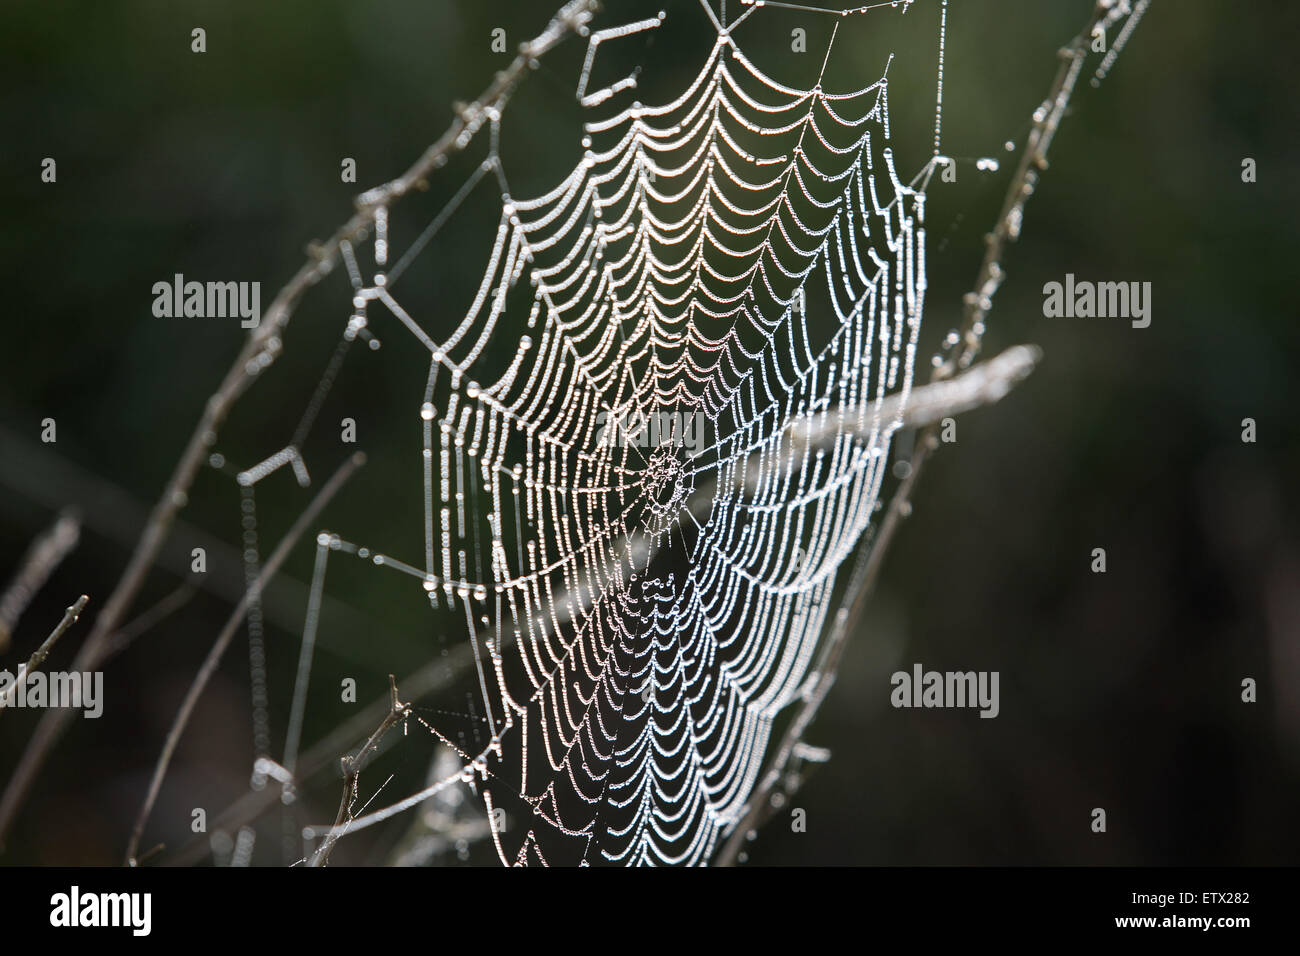 NLD, los Países Bajos, las arañas web con gotas de rocío. La LND, Niederlande Tautropfen Spinnennetz, mit. Foto de stock